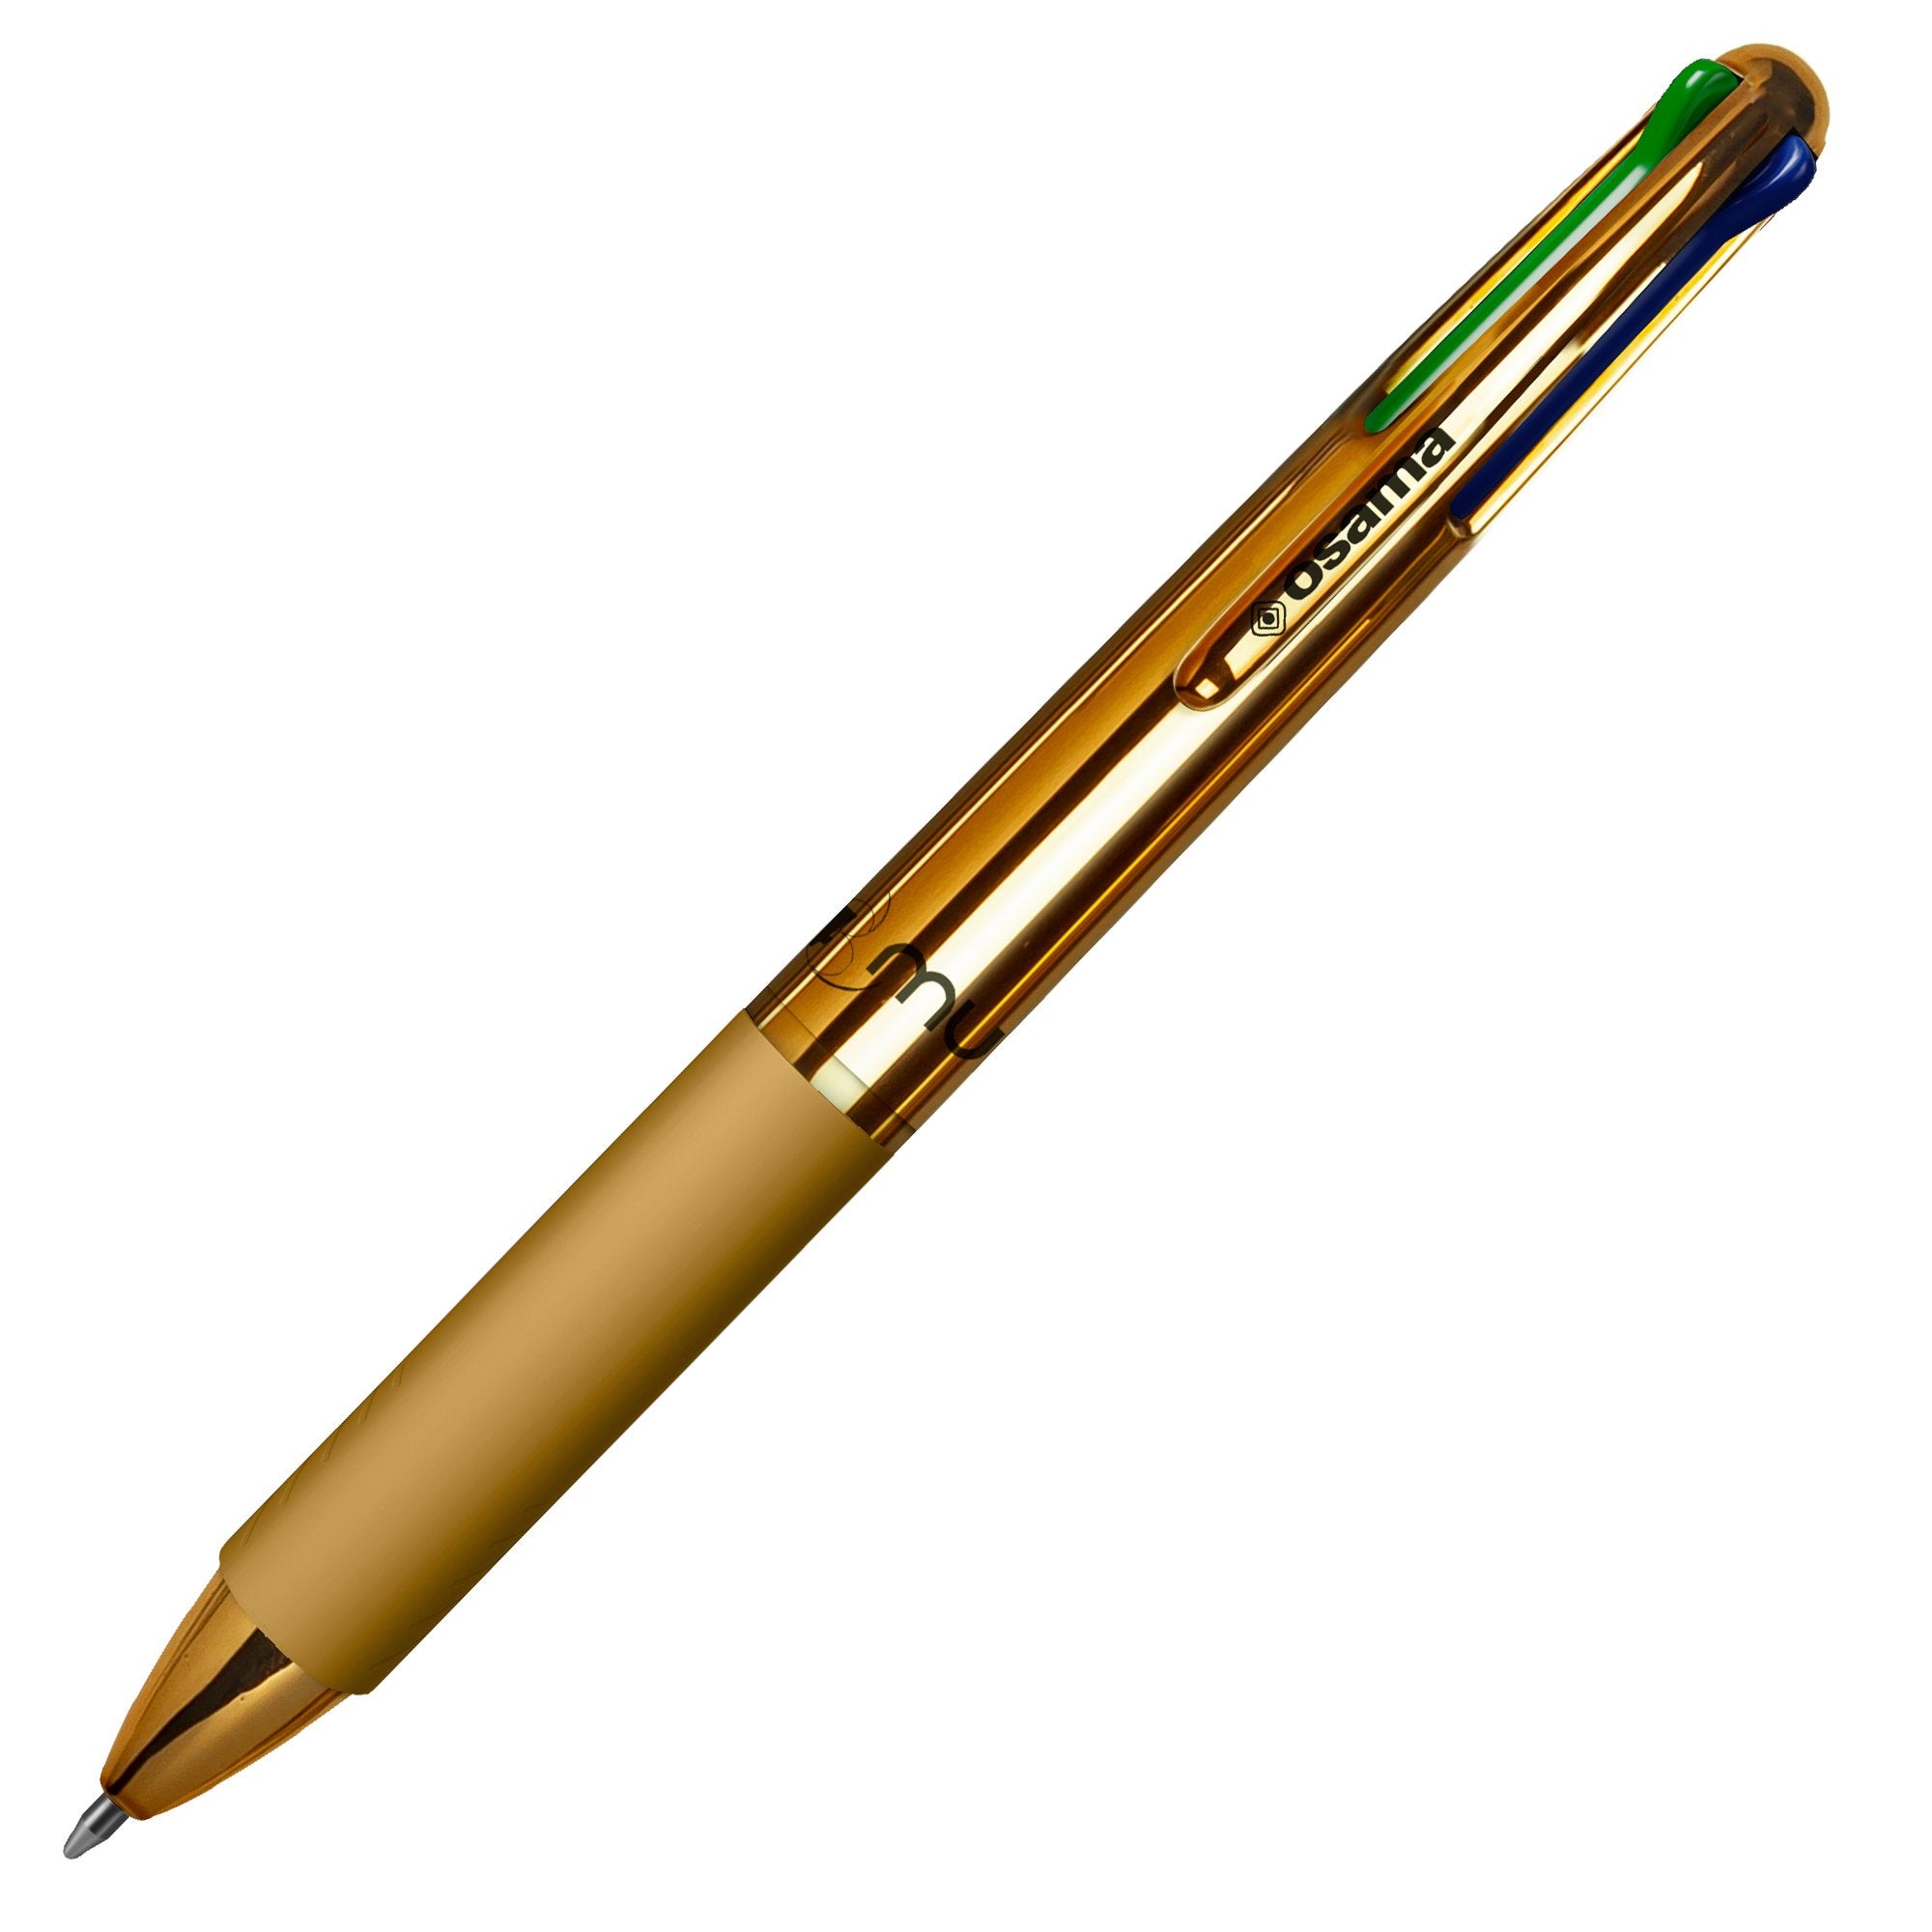 osama-penna-sfera-4-colori-4-multi-1-0mm-chrome-metallic-gold